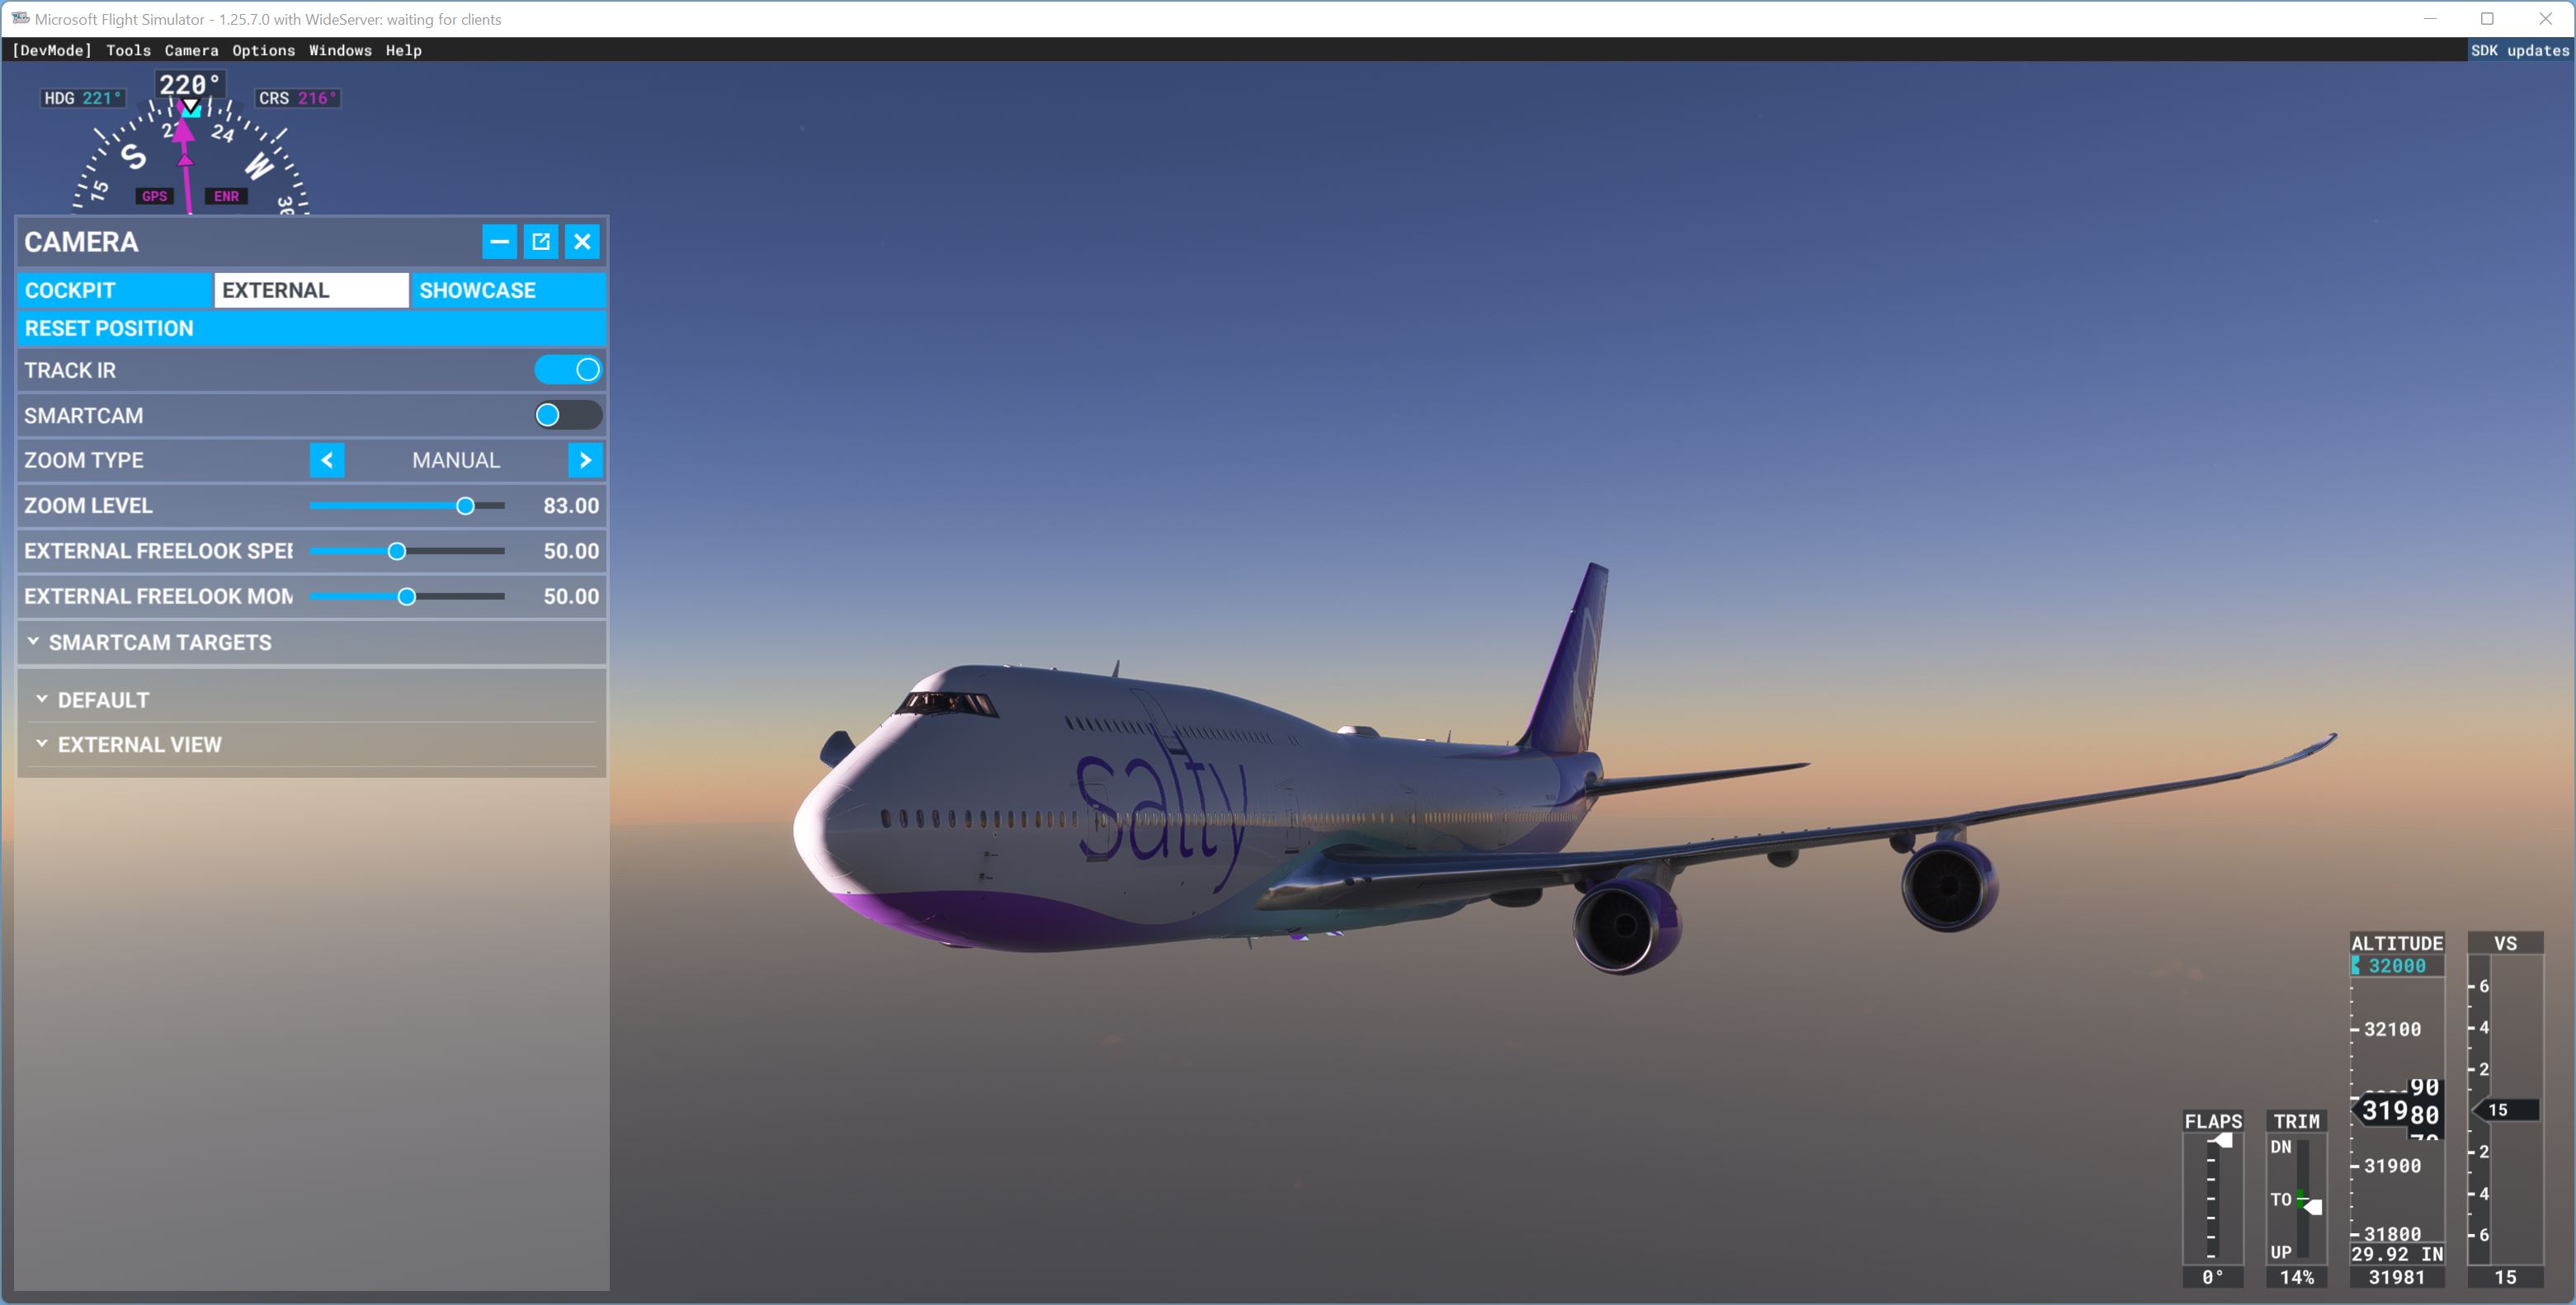 enroute KLAX-YSSY, flying Salty 747 on MSFS 